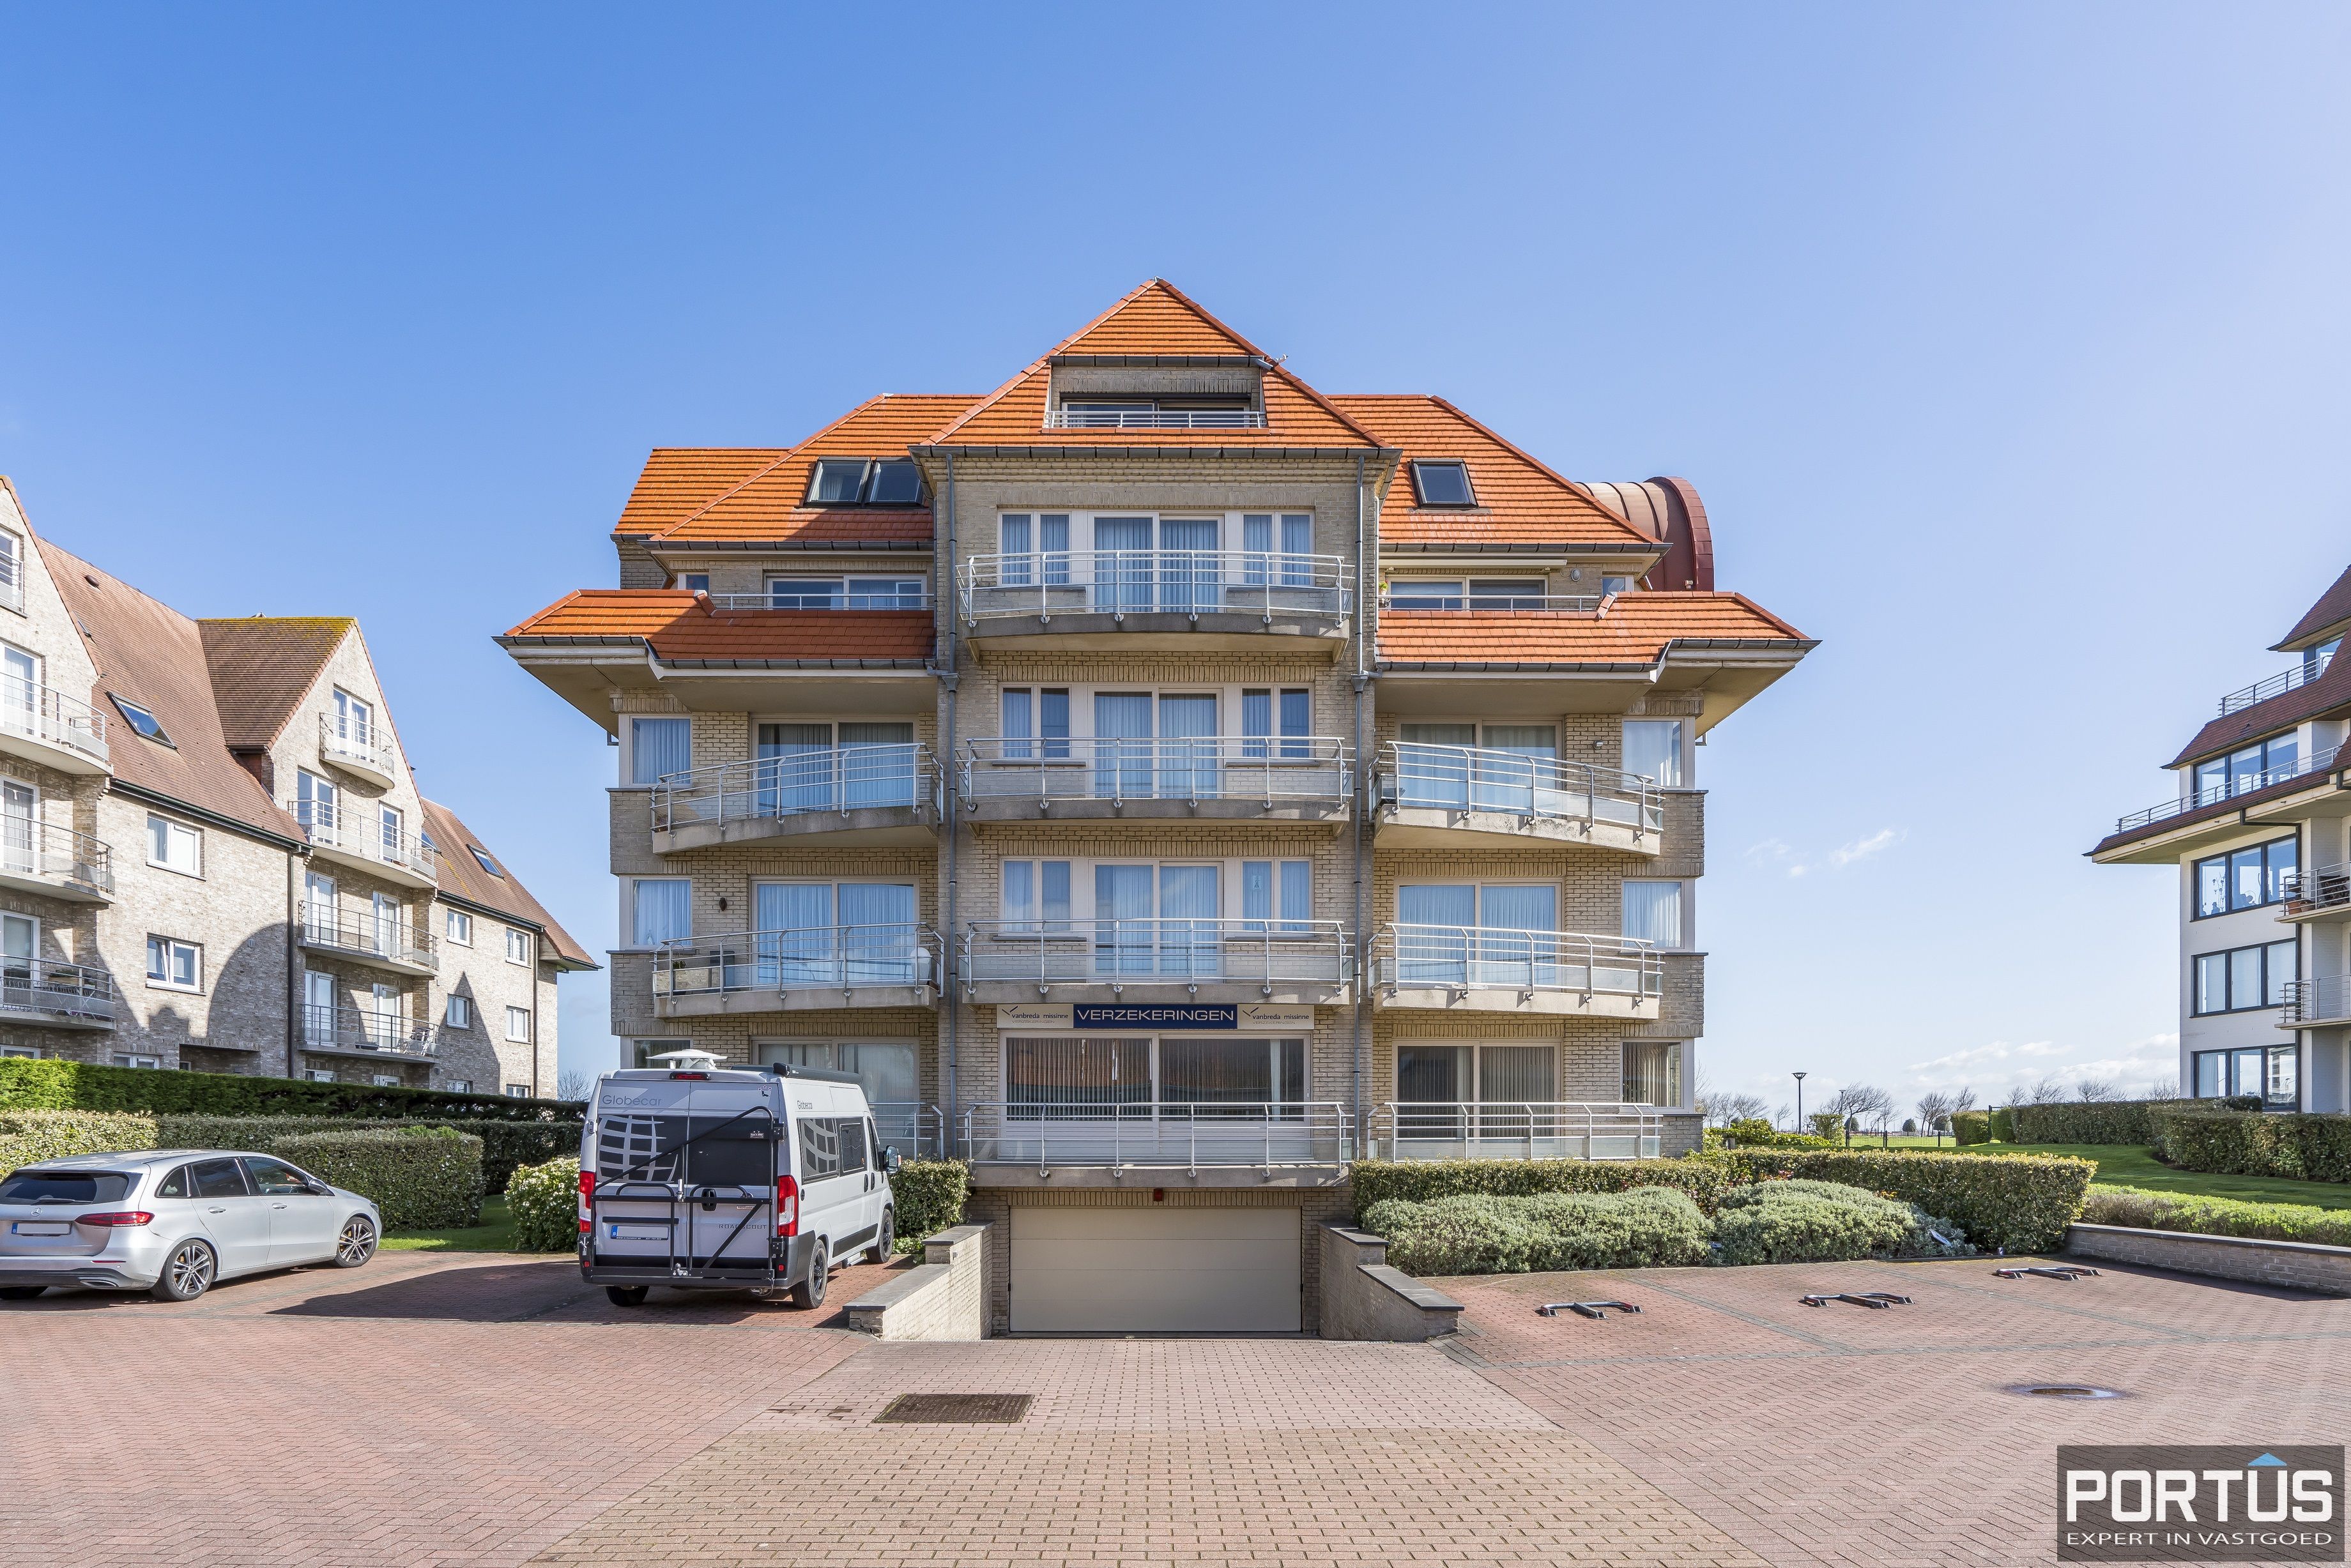 Appartement/Handelsgelijkvloers met terras te koop te Nieuwpoort - 15490